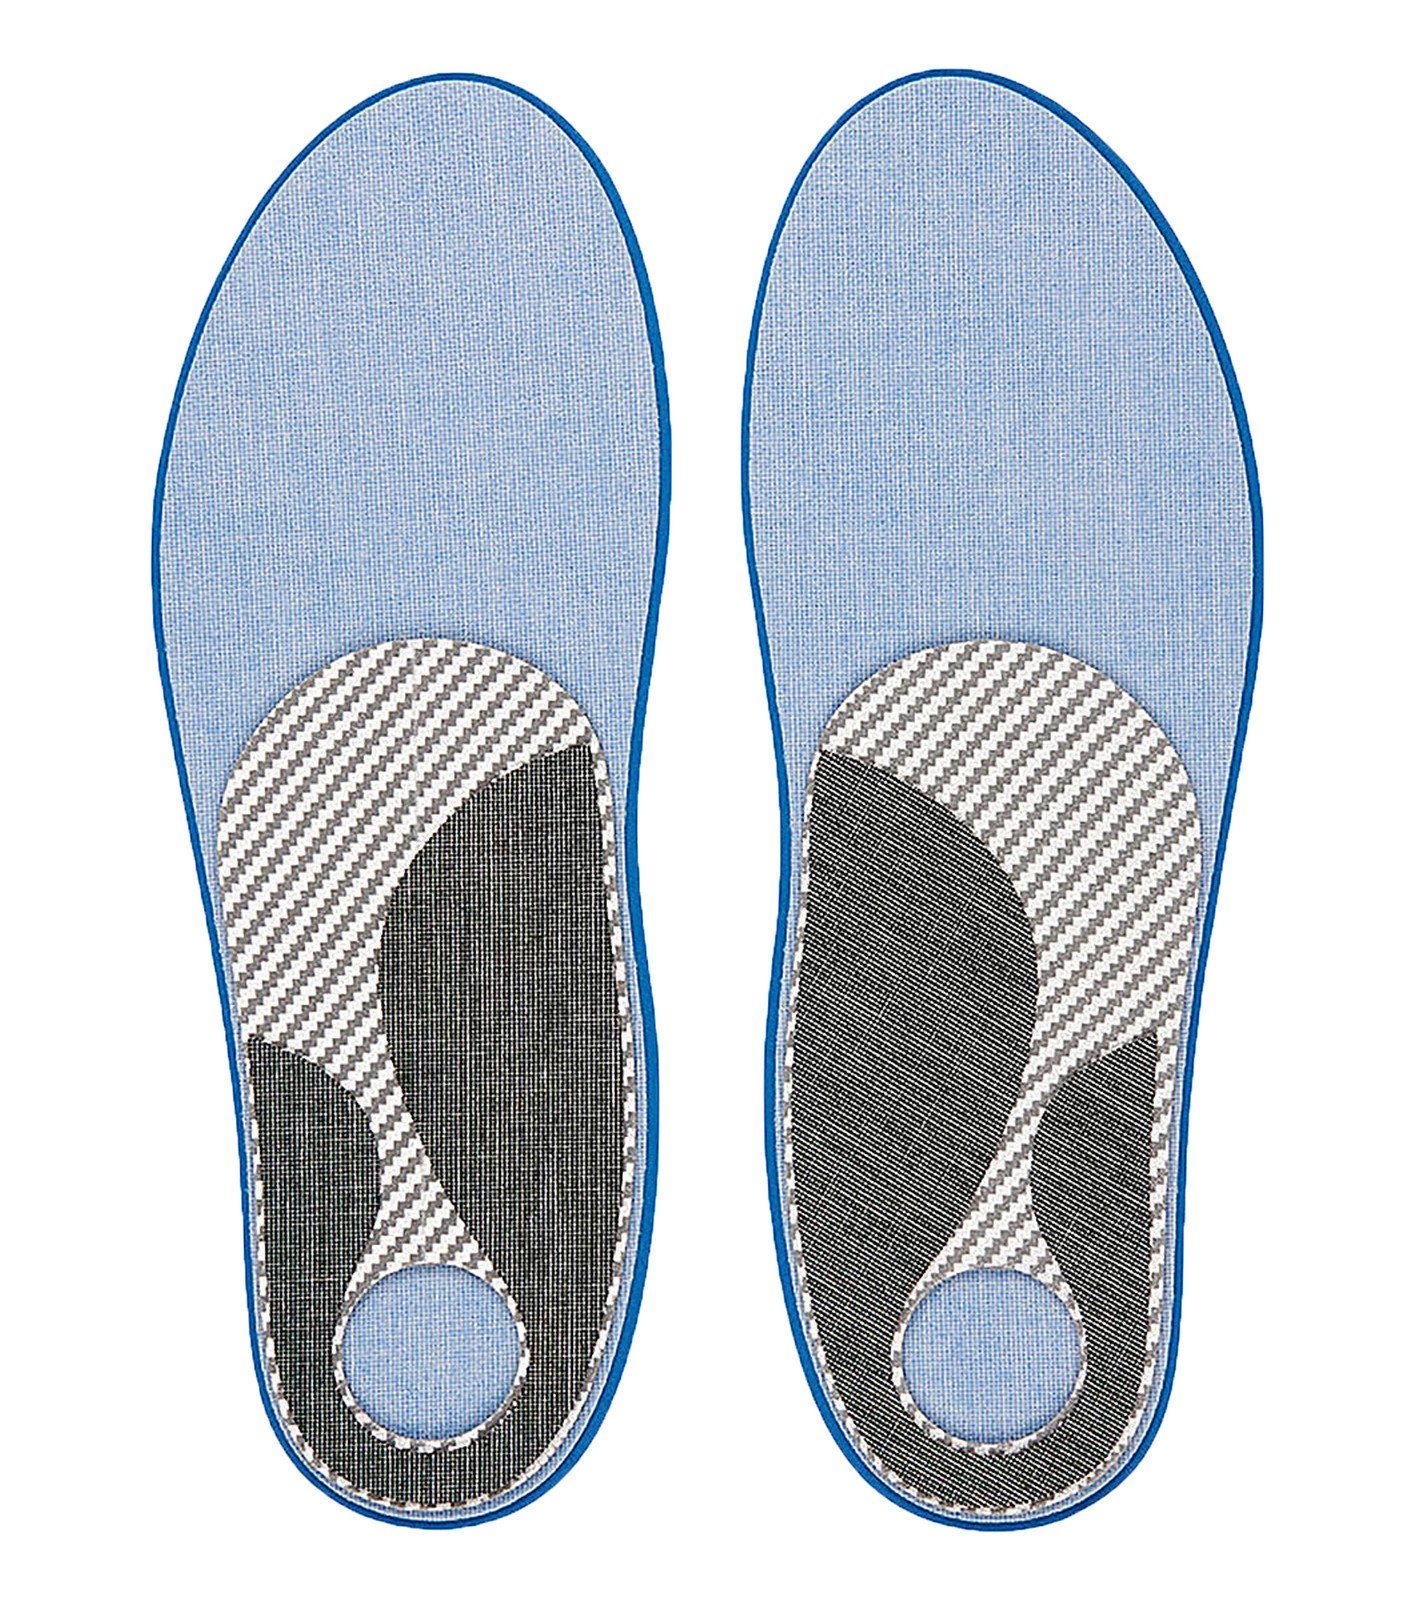 Einlegesohlen XC Einlagen für Einlegesohlen Skating Ski-Langläufer anpassbare Schuheinlage Sidas Custom SIDAS Blau/Schwarz